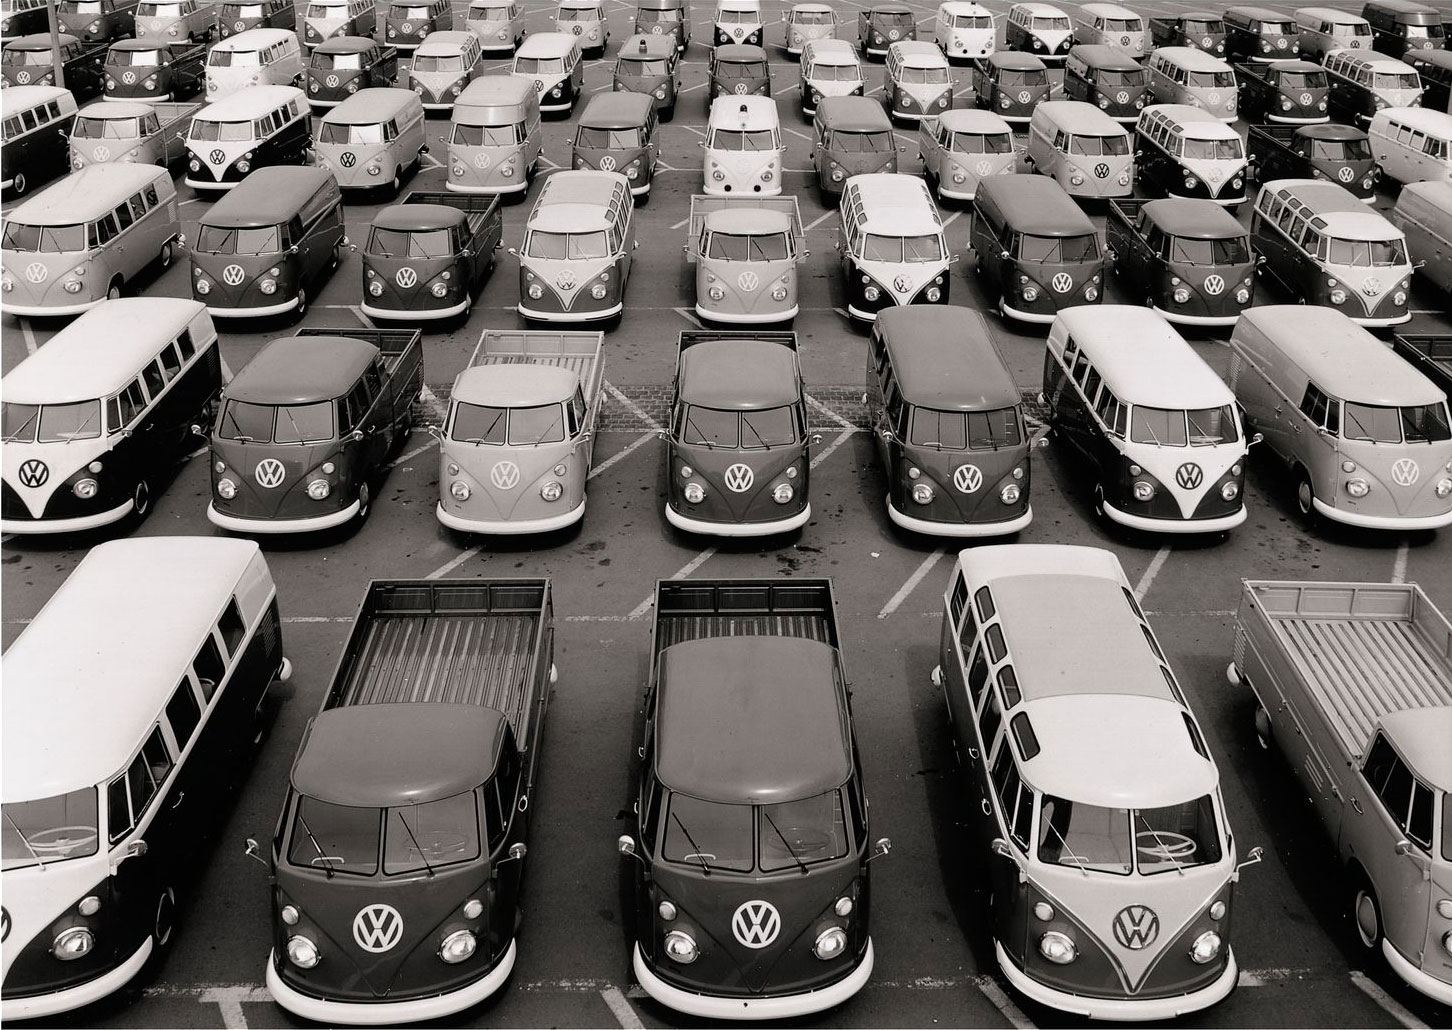 En 70 ans, le VW Combi Transporter a sérieusement évolué - Challenges